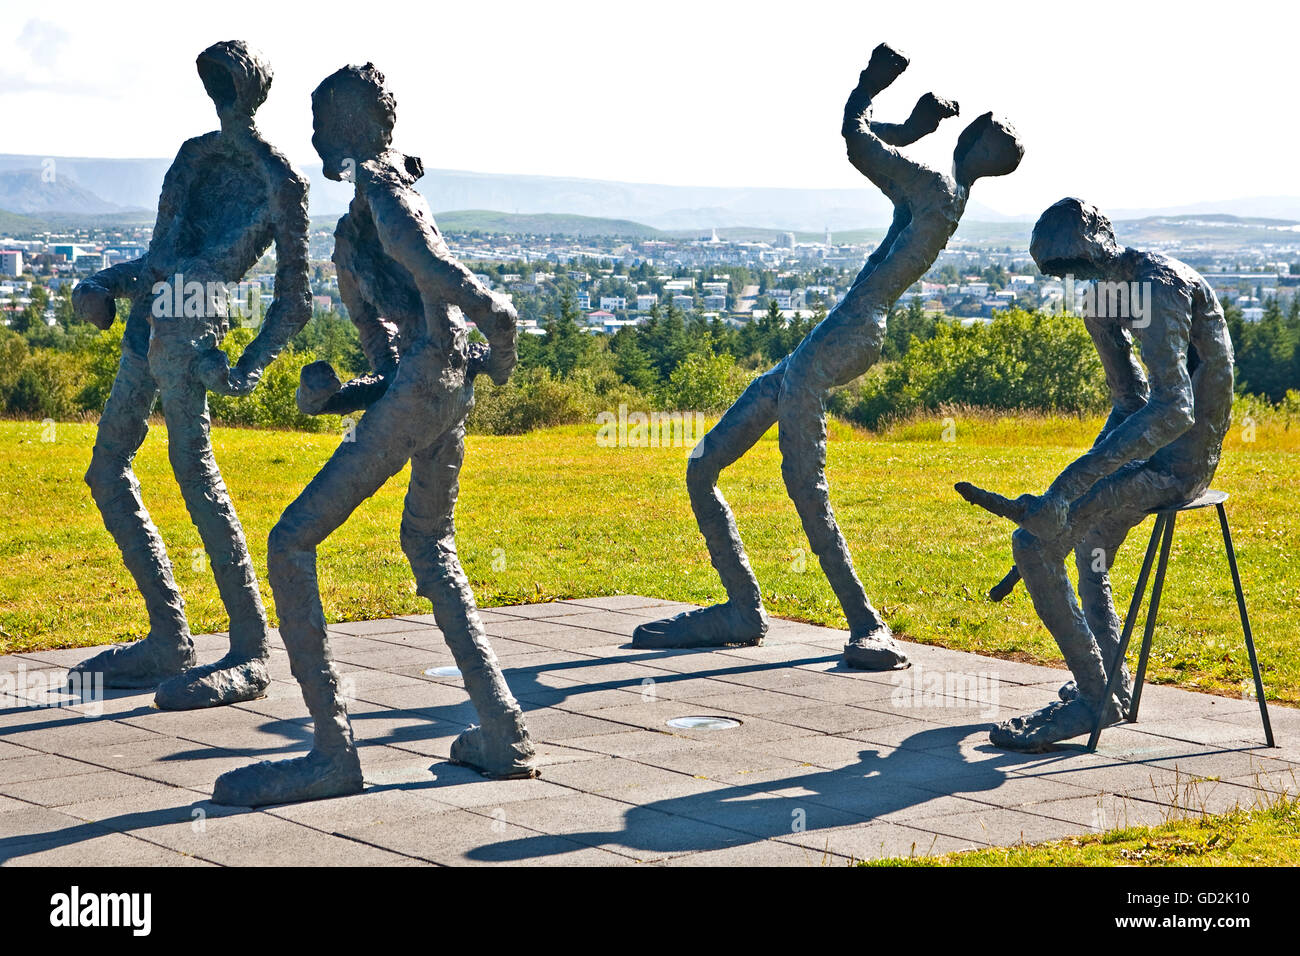 Bildende Kunst, Palsdottir, Thorbjörg (1919 - 2009), Skulptur' 'ansleikur'', 1970, bronze, Perlan, Oeskjuhlio, Reykjavik, Artist's Urheberrecht nicht geklärt zu werden. Stockfoto